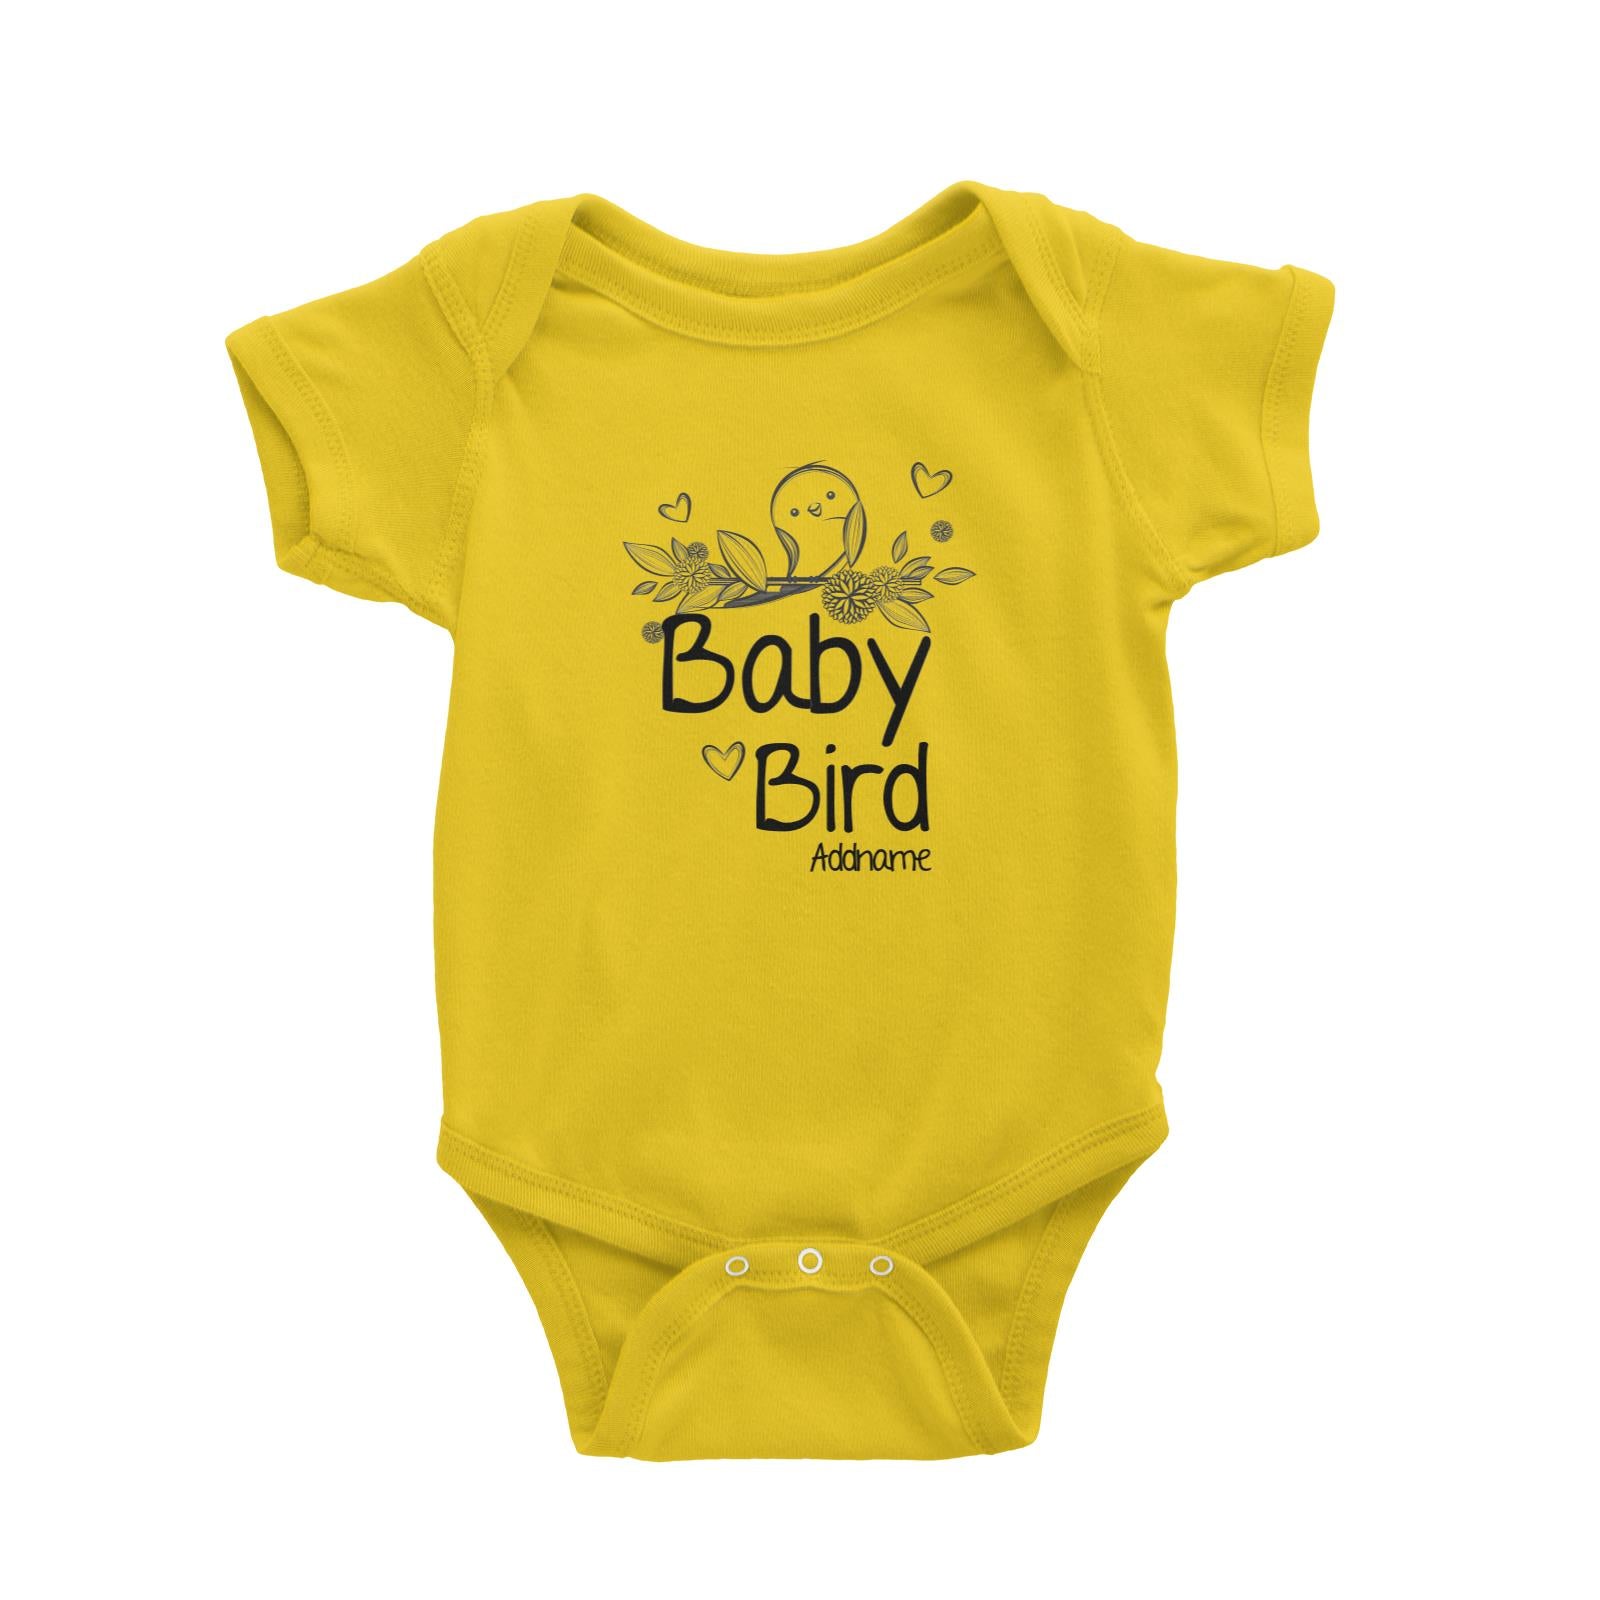 Baby Bird Baby Romper